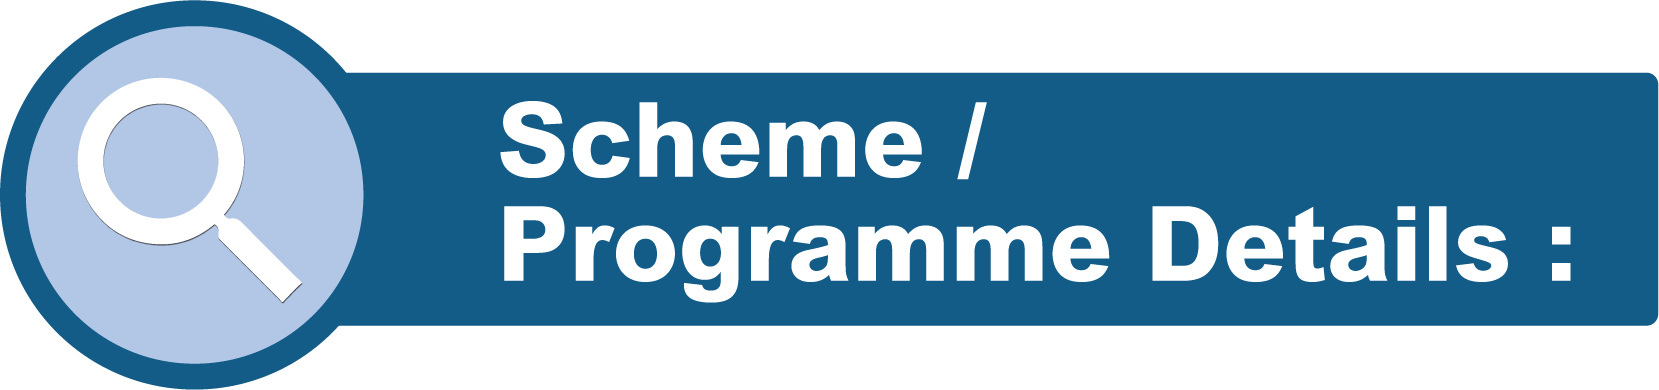 Scheme / Programme Details: